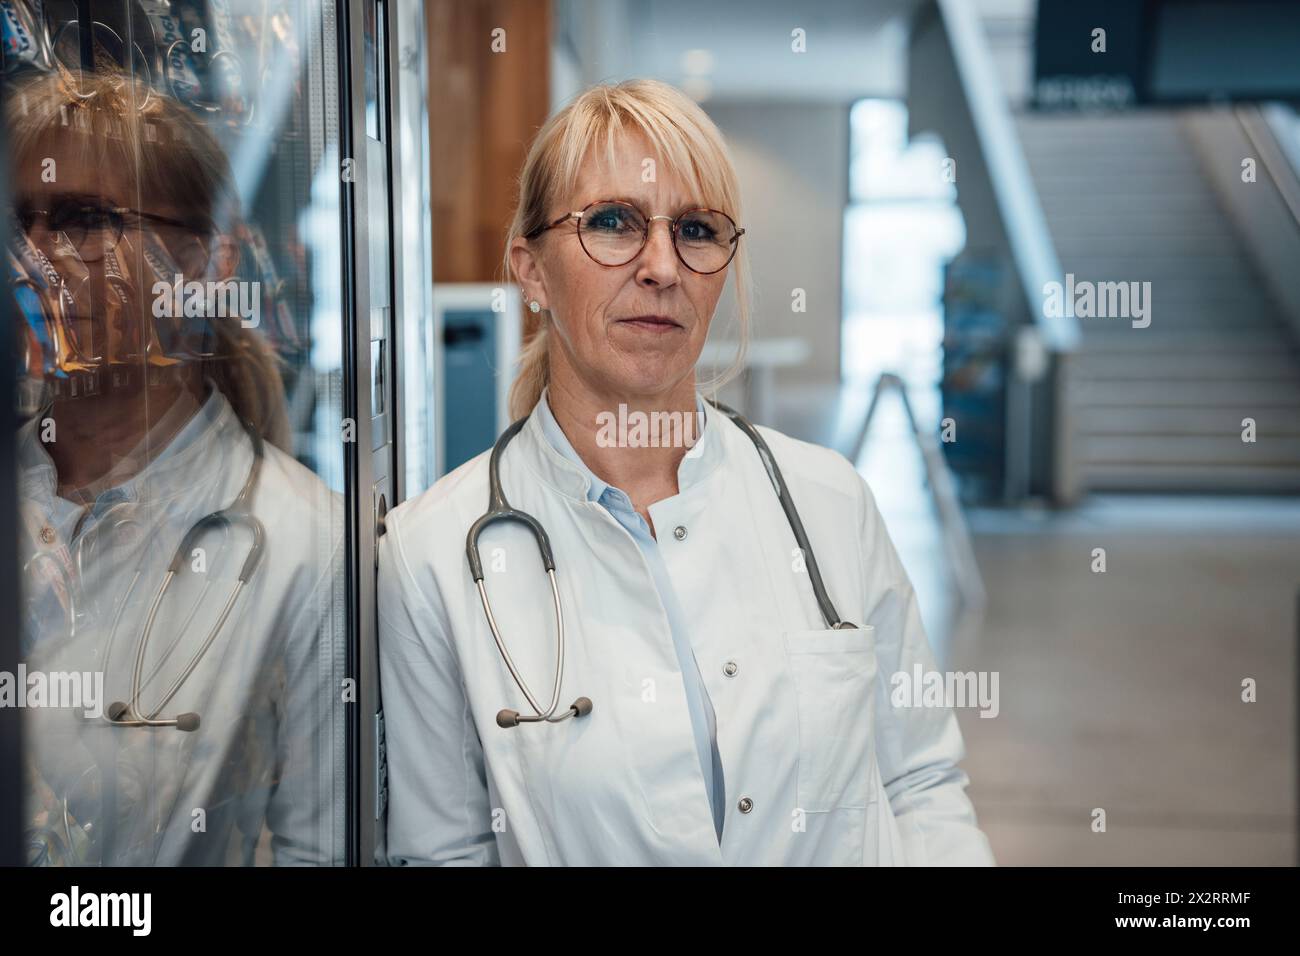 Médecin mûr s'appuyant sur le distributeur automatique à l'hôpital Banque D'Images